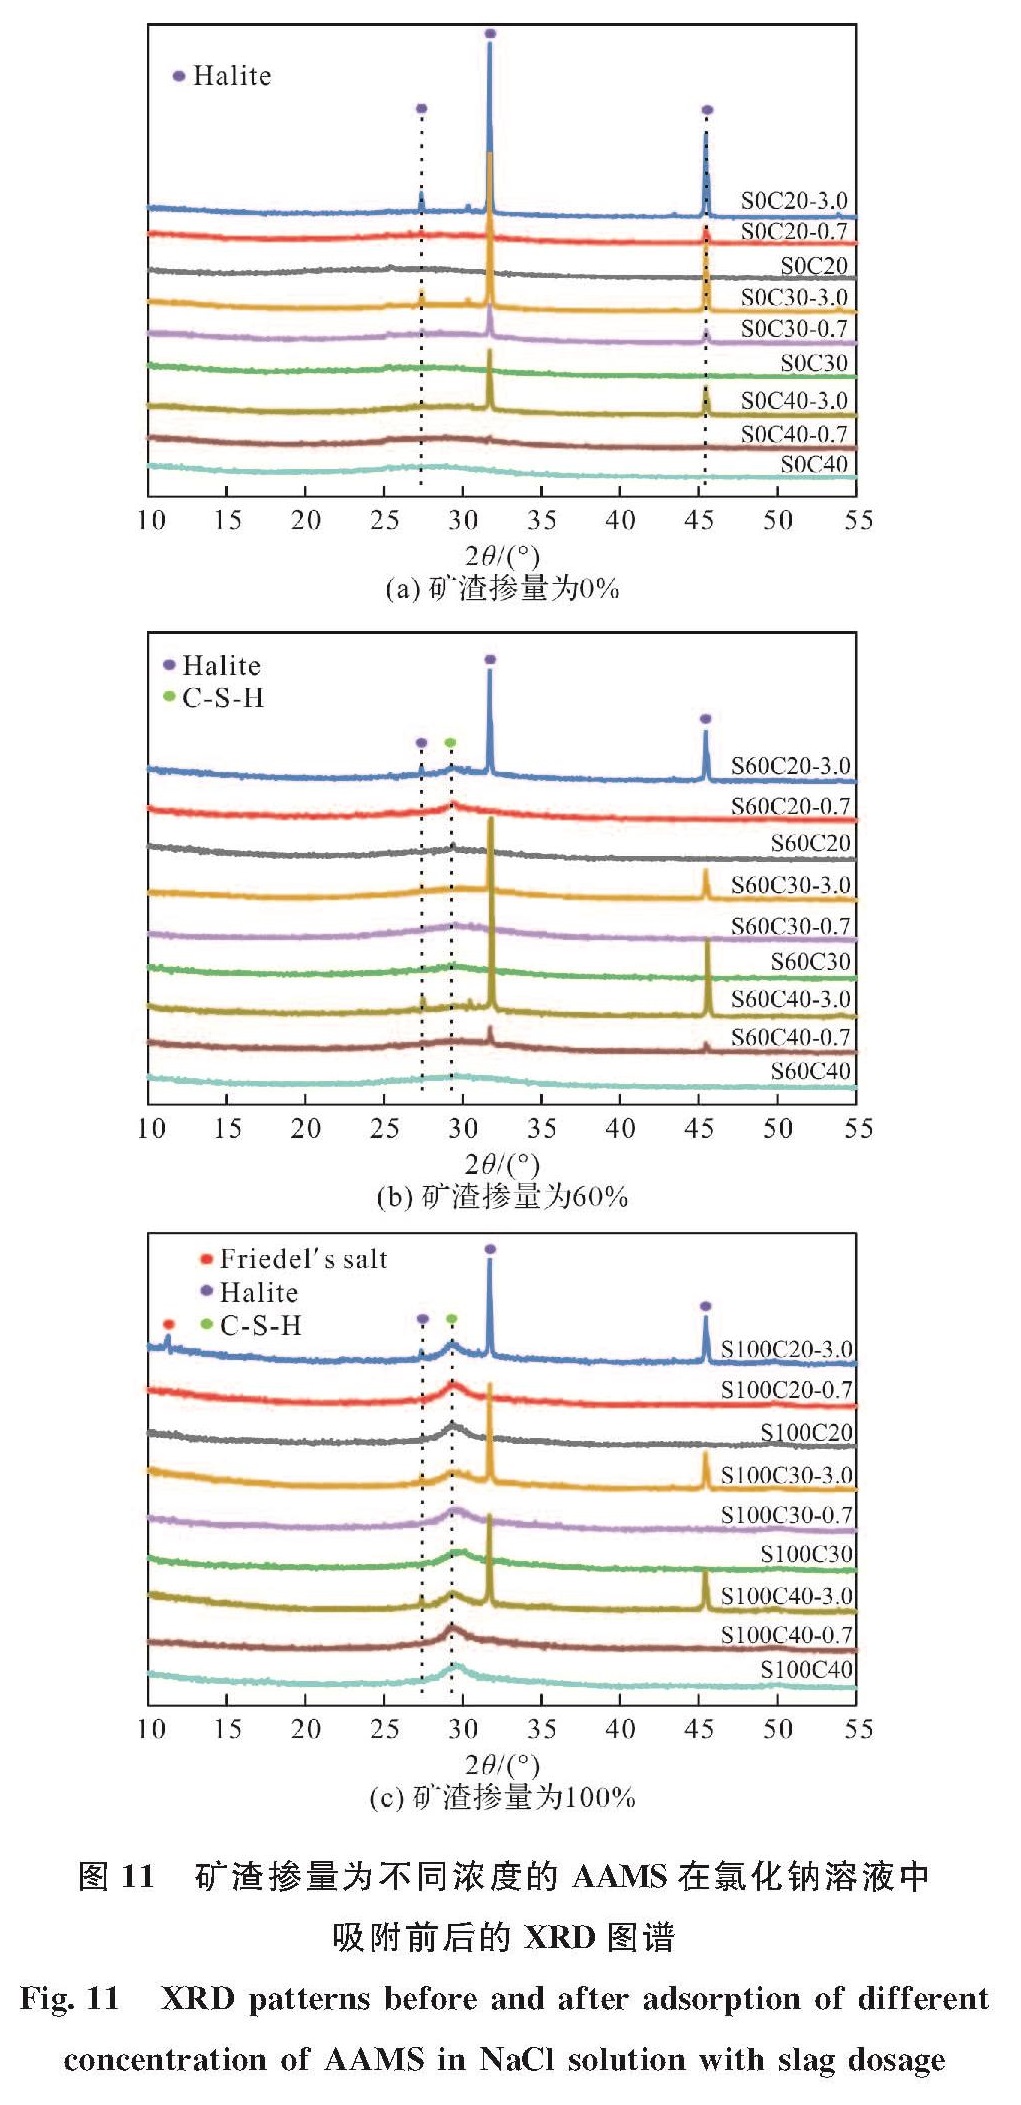 图 11 矿渣掺量为不同浓度的AAMS在氯化钠溶液中吸附前后的XRD图谱<br/>Fig.11 XRD patterns before and after adsorption of different concentration of AAMS in NaCl solution with slag dosage